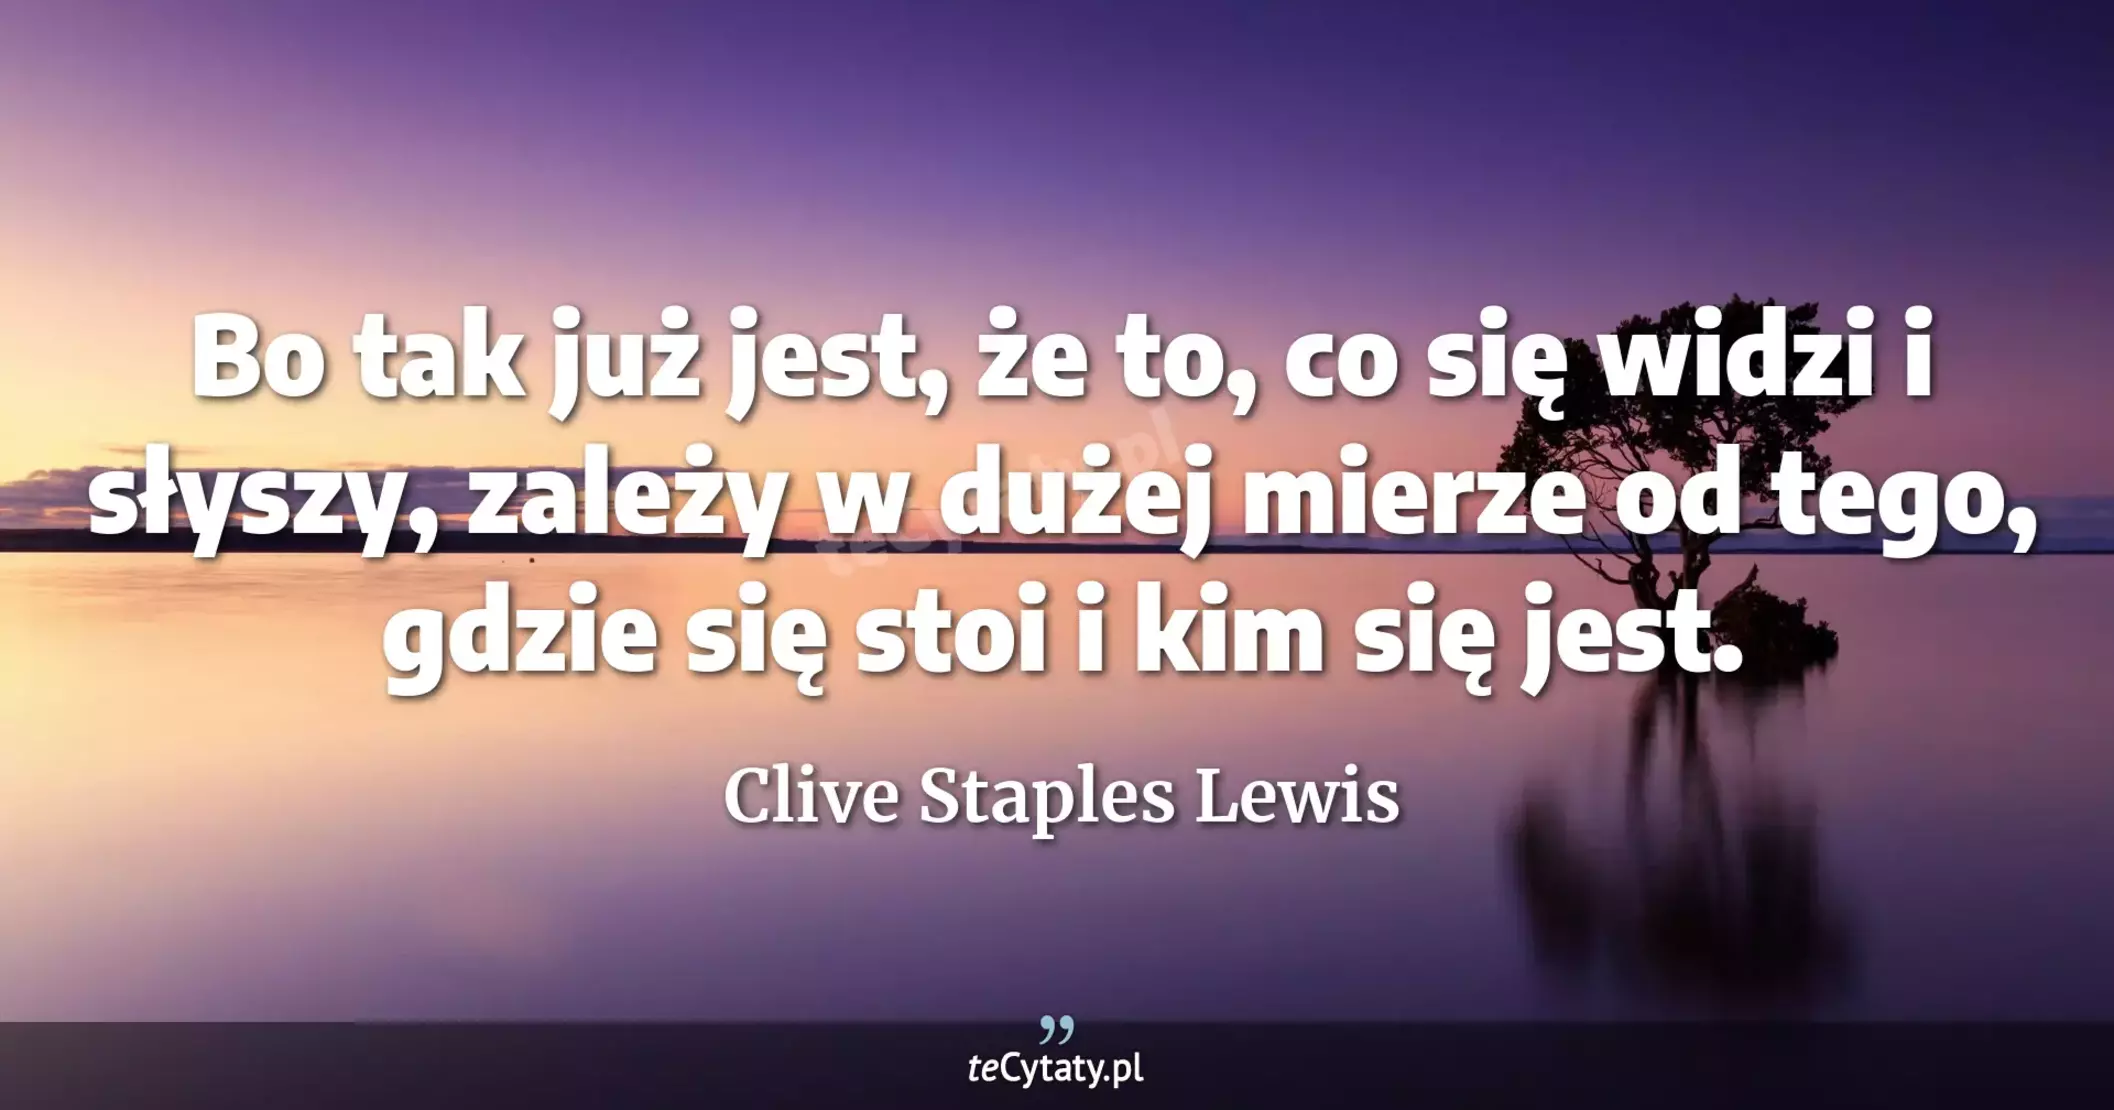 Bo tak już jest, że to, co się widzi i słyszy, zależy w dużej mierze od tego, gdzie się stoi i kim się jest. - Clive Staples Lewis